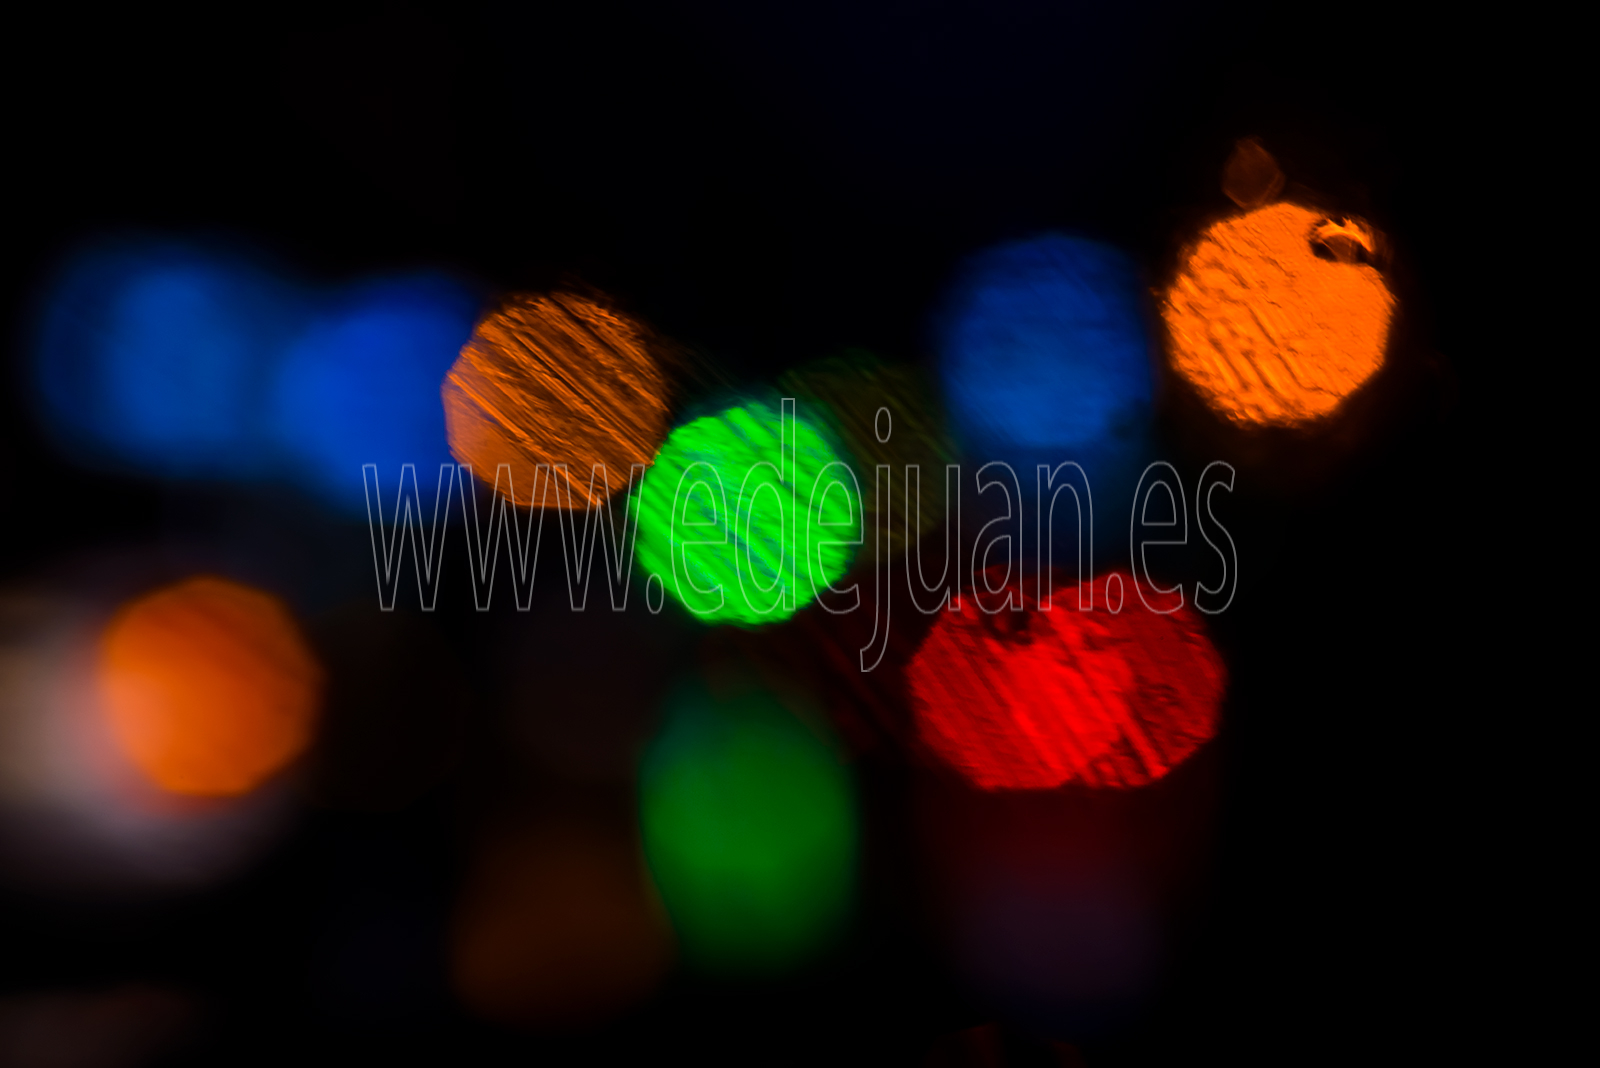 Fotografía abstracta de desfonque de luces de colores